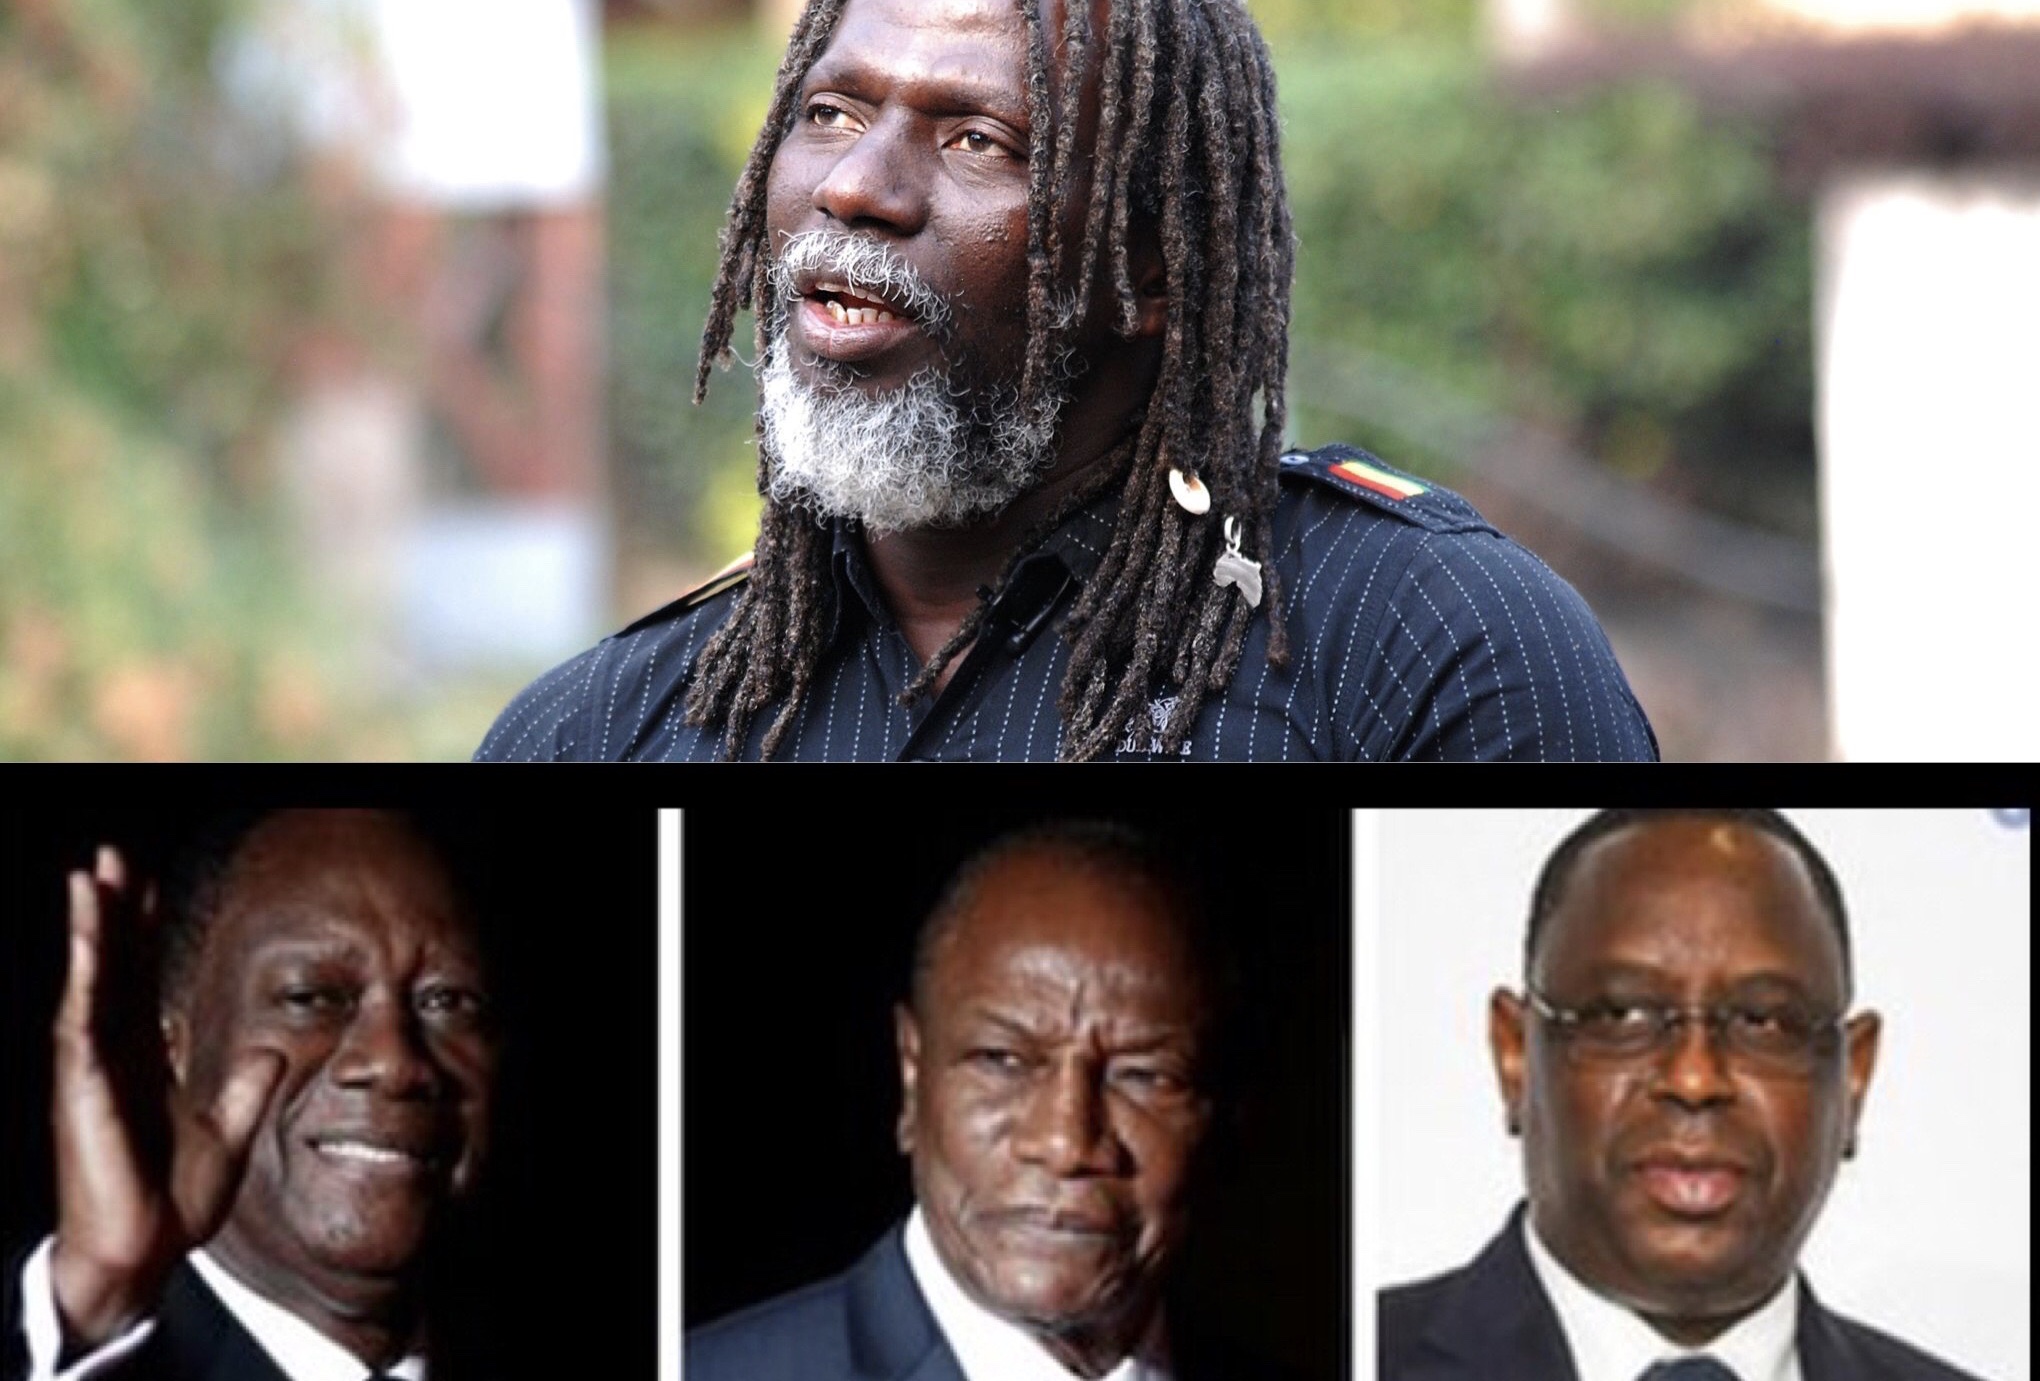 Afrique de l’Ouest: Ambition de 3e mandat, les avertissements de Tiken Jah Fakoly à Sall, Ouattara et Condé